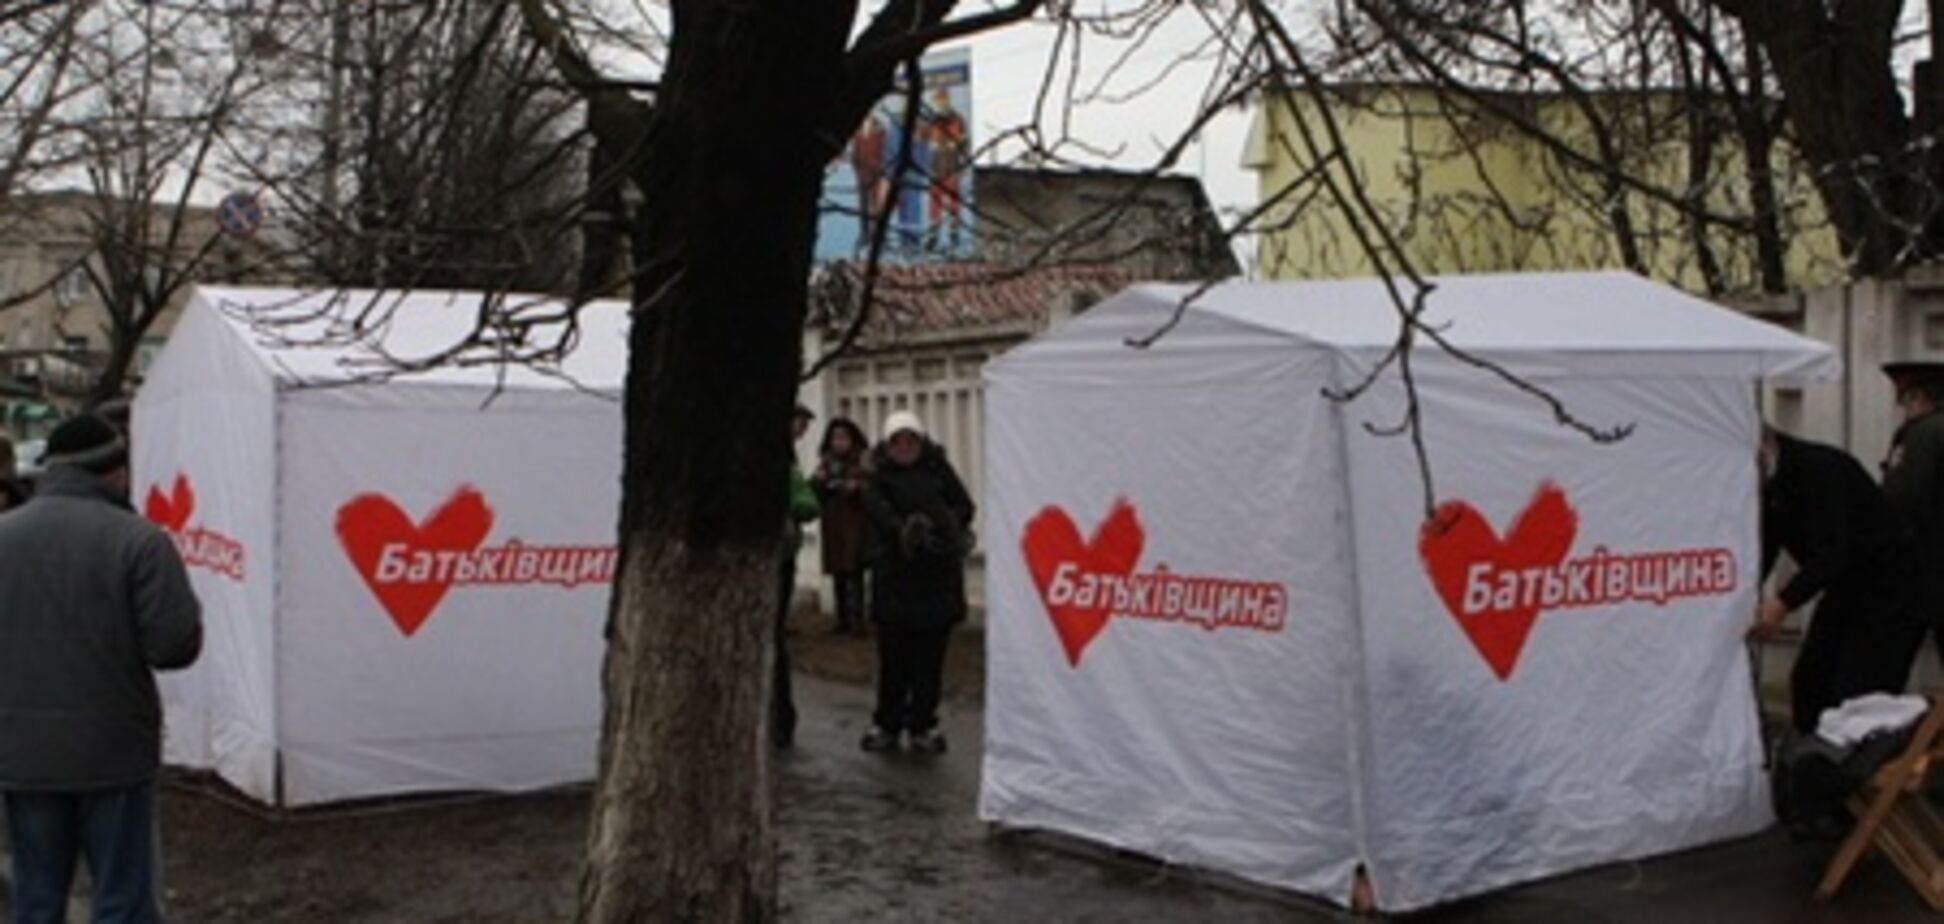 Под Качановской колонией силой снесли палатки 'Батькивщины'